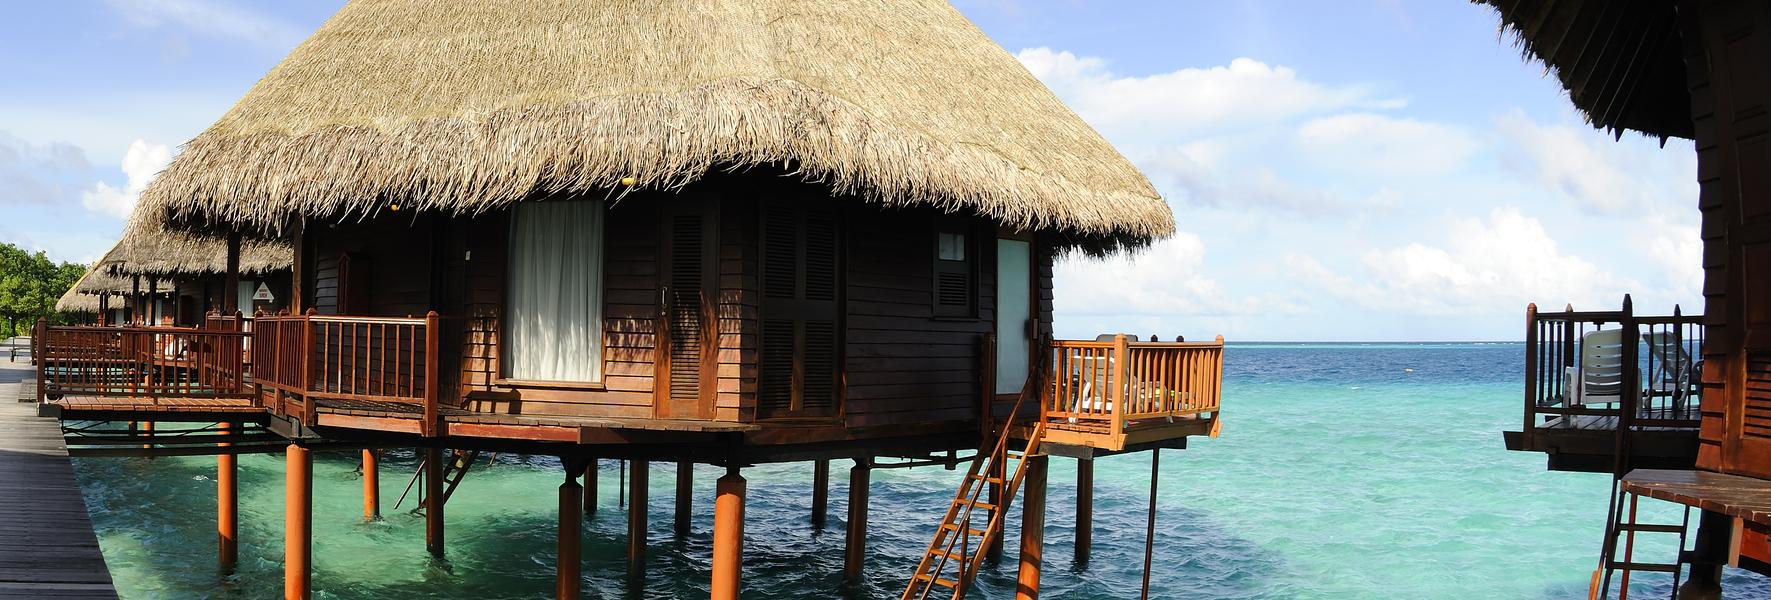 Case vacanze e appartamenti alle Bahamas in affitto - CaseVacanza.it